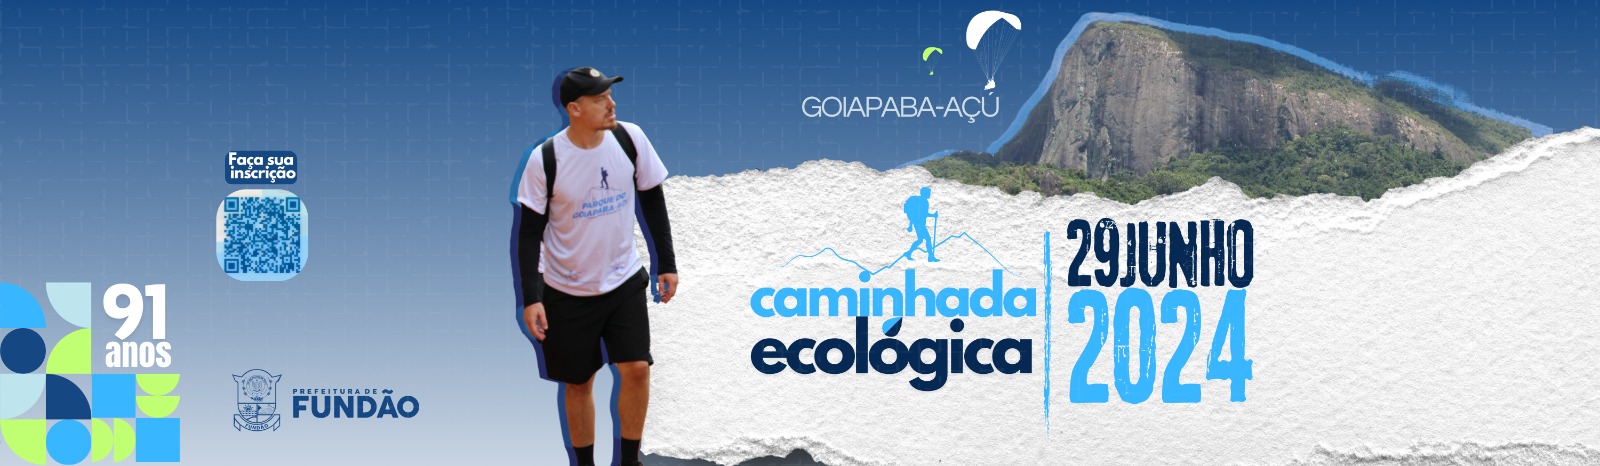 Inscrições abertas para a Caminhada ecológica no parque do Goiapaba-açu. Faça sua inscrição! 